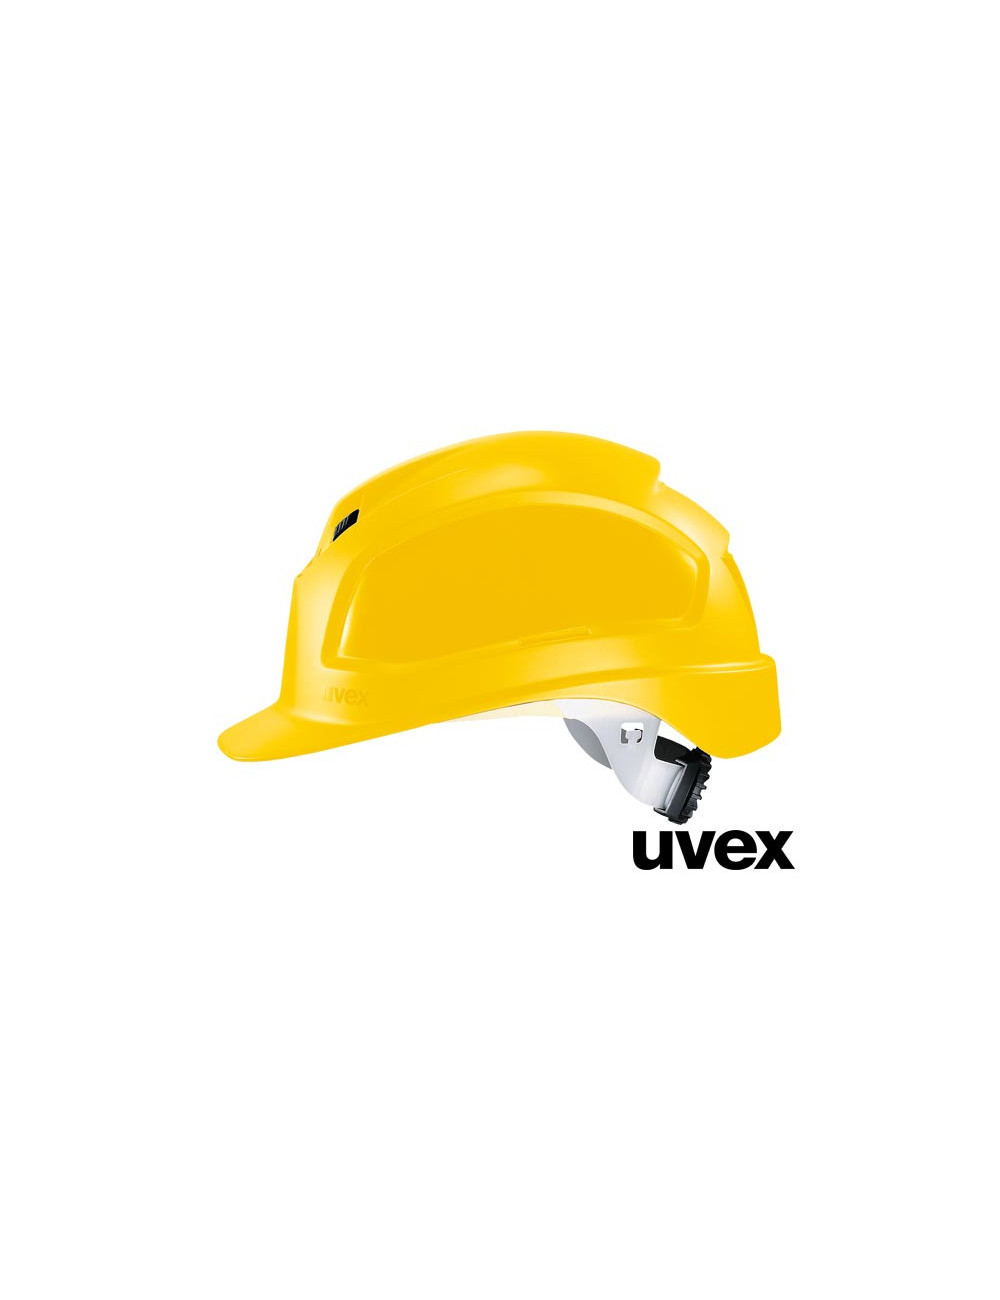 Helmet ux-kas-pheos y yellow Uvex